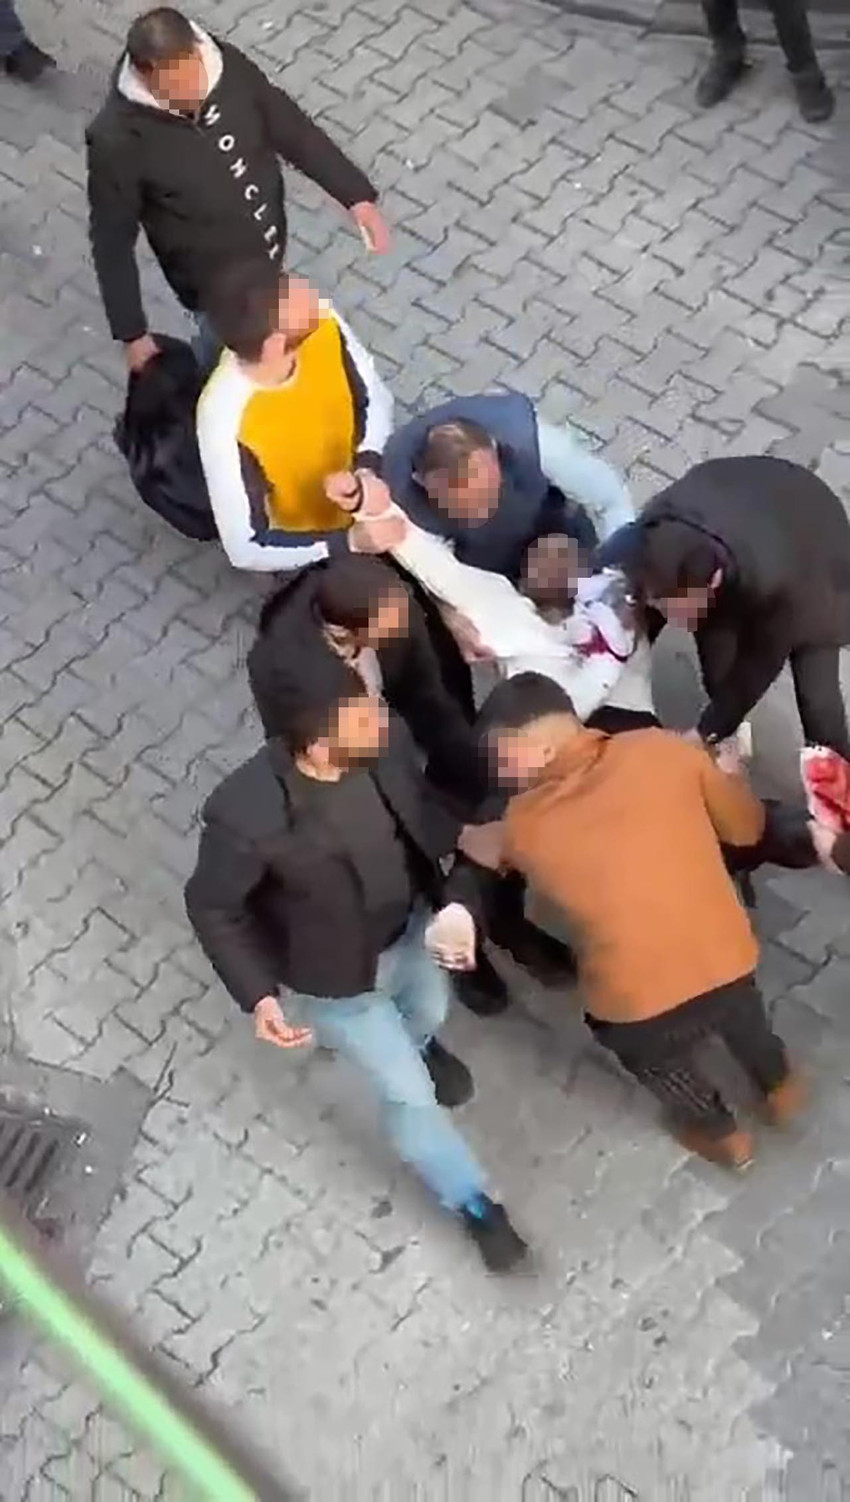 İstanbul Fatih'te bir kişi aralarında alacak verecek meselesi olan arkadaşını sokak ortasında defalarca bıçakladı. Dehşet anları bir iş yerinin güvenlik kamerasına yansıdı.